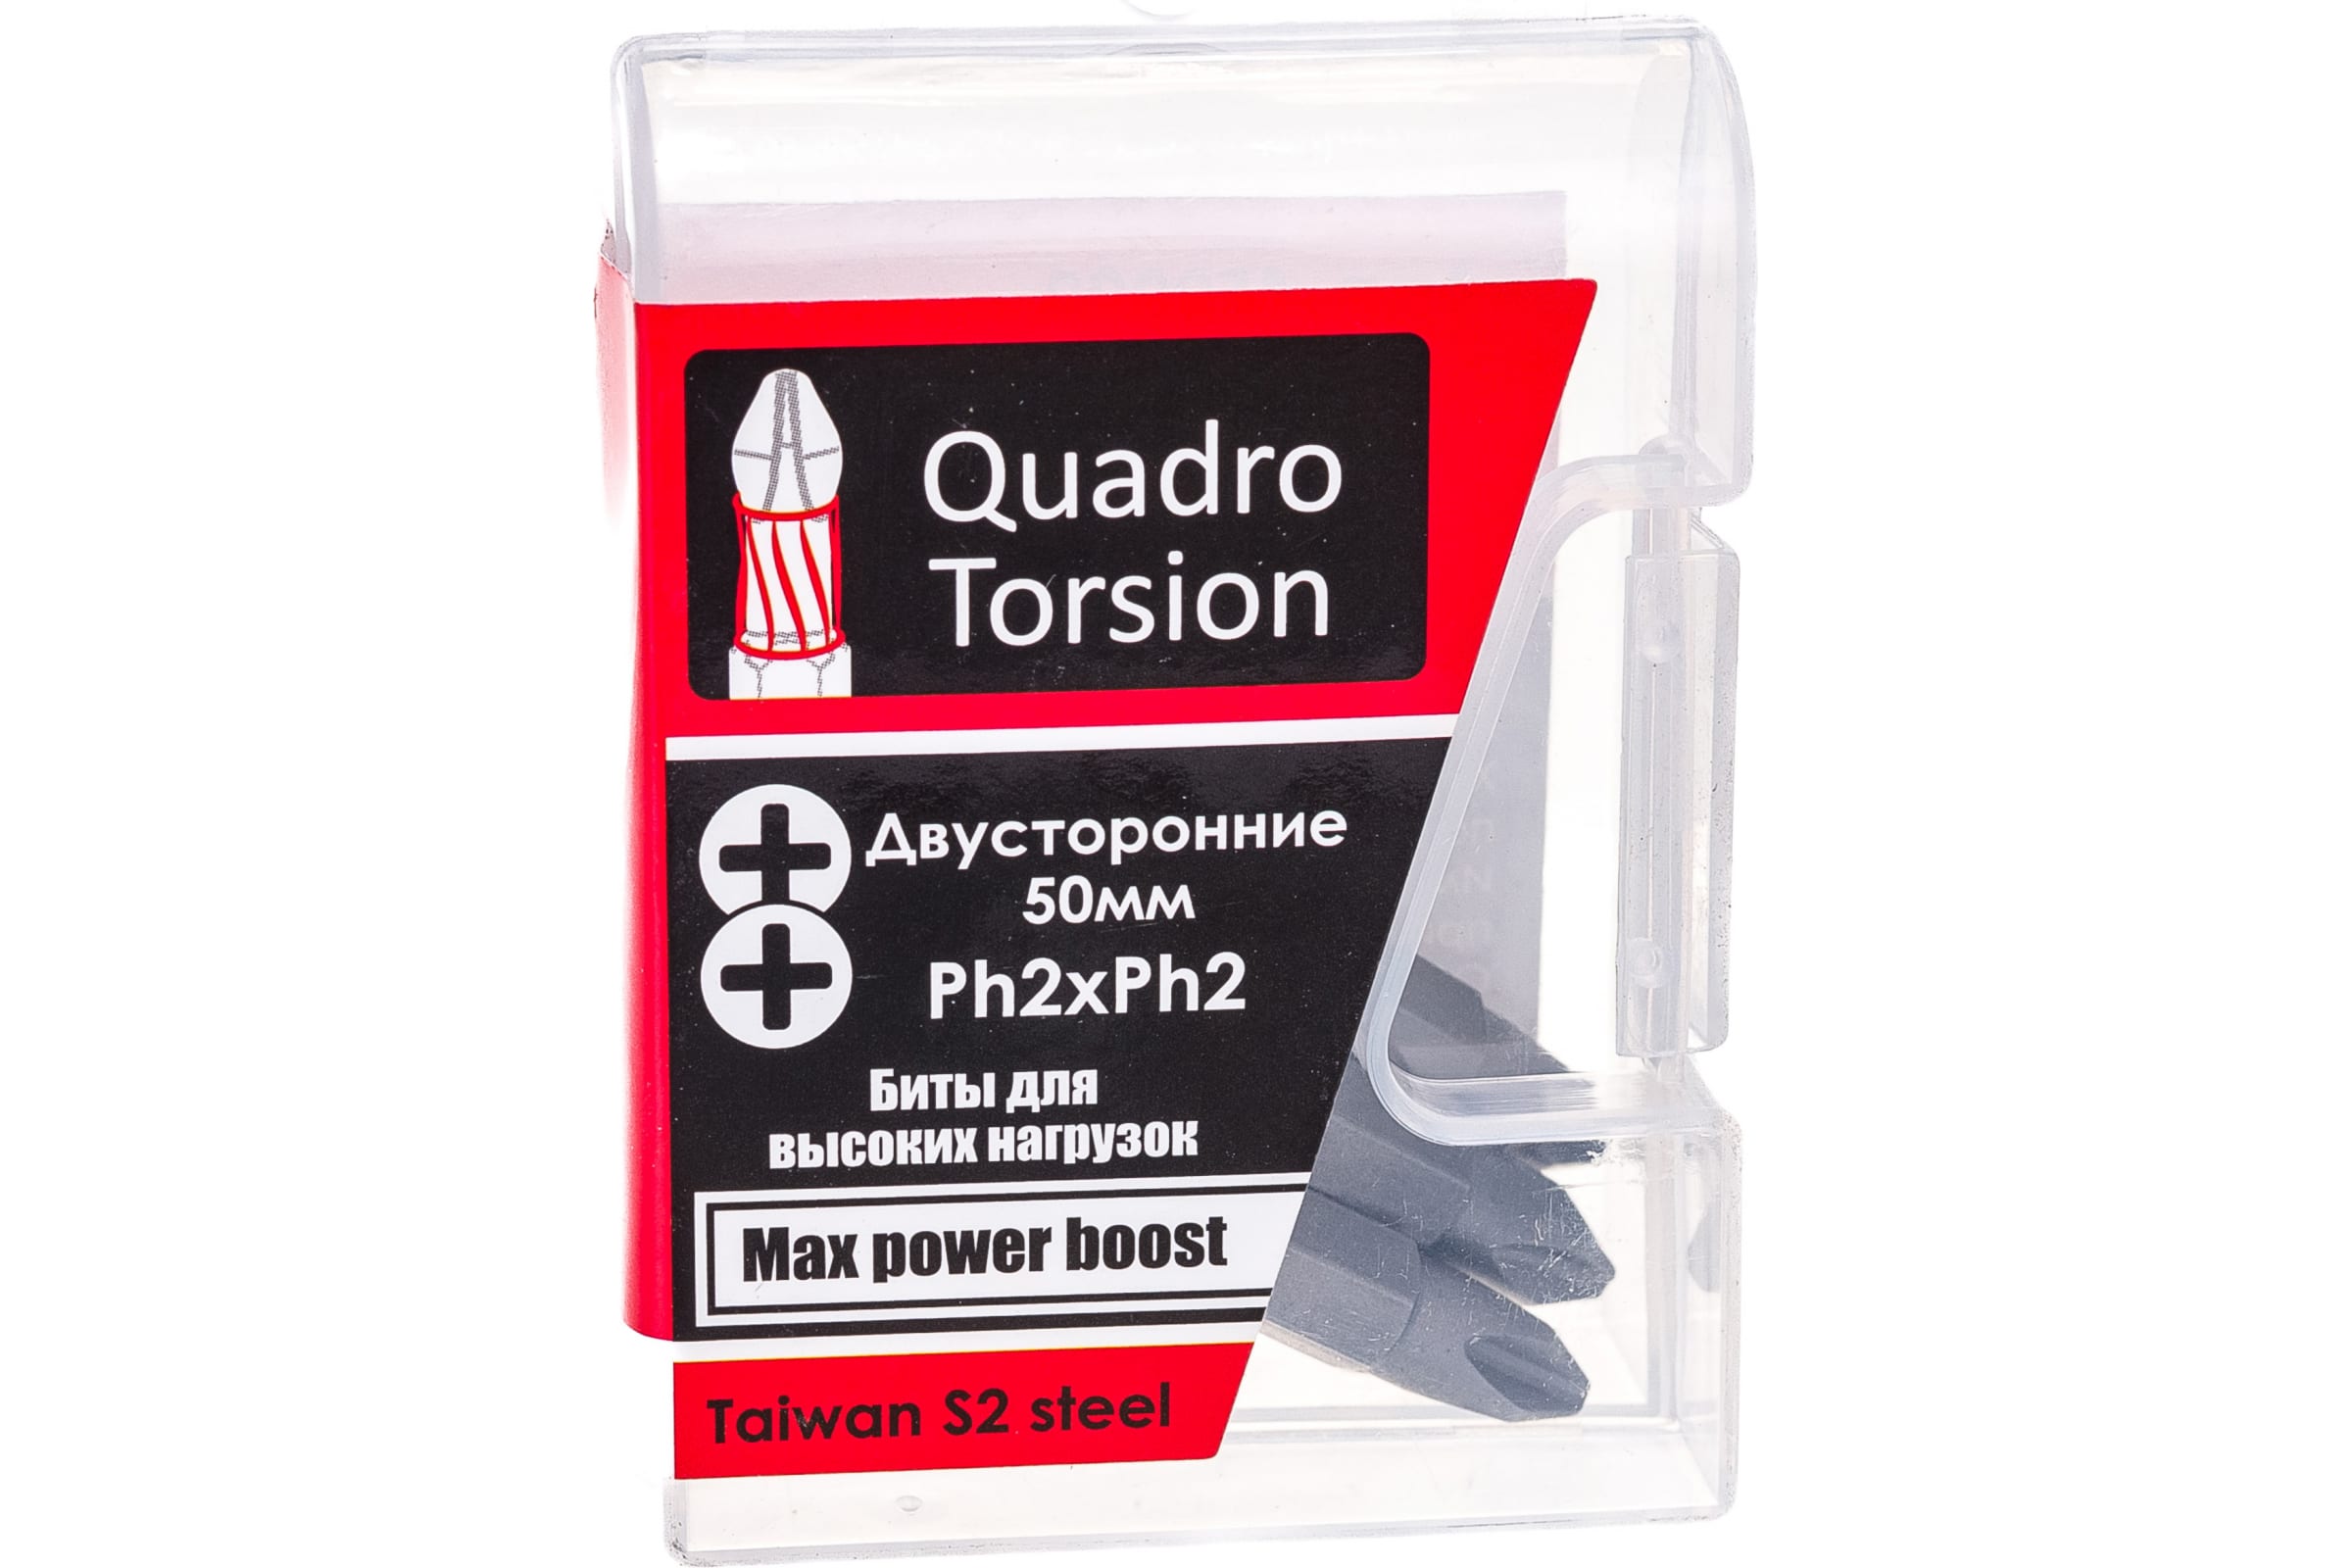 Quadro Torsion бита 1/4 двусторонняя Ph2xPh2 - 50мм 5шт./кор. 450022 доска магнитная двусторонняя 35 × 25 см